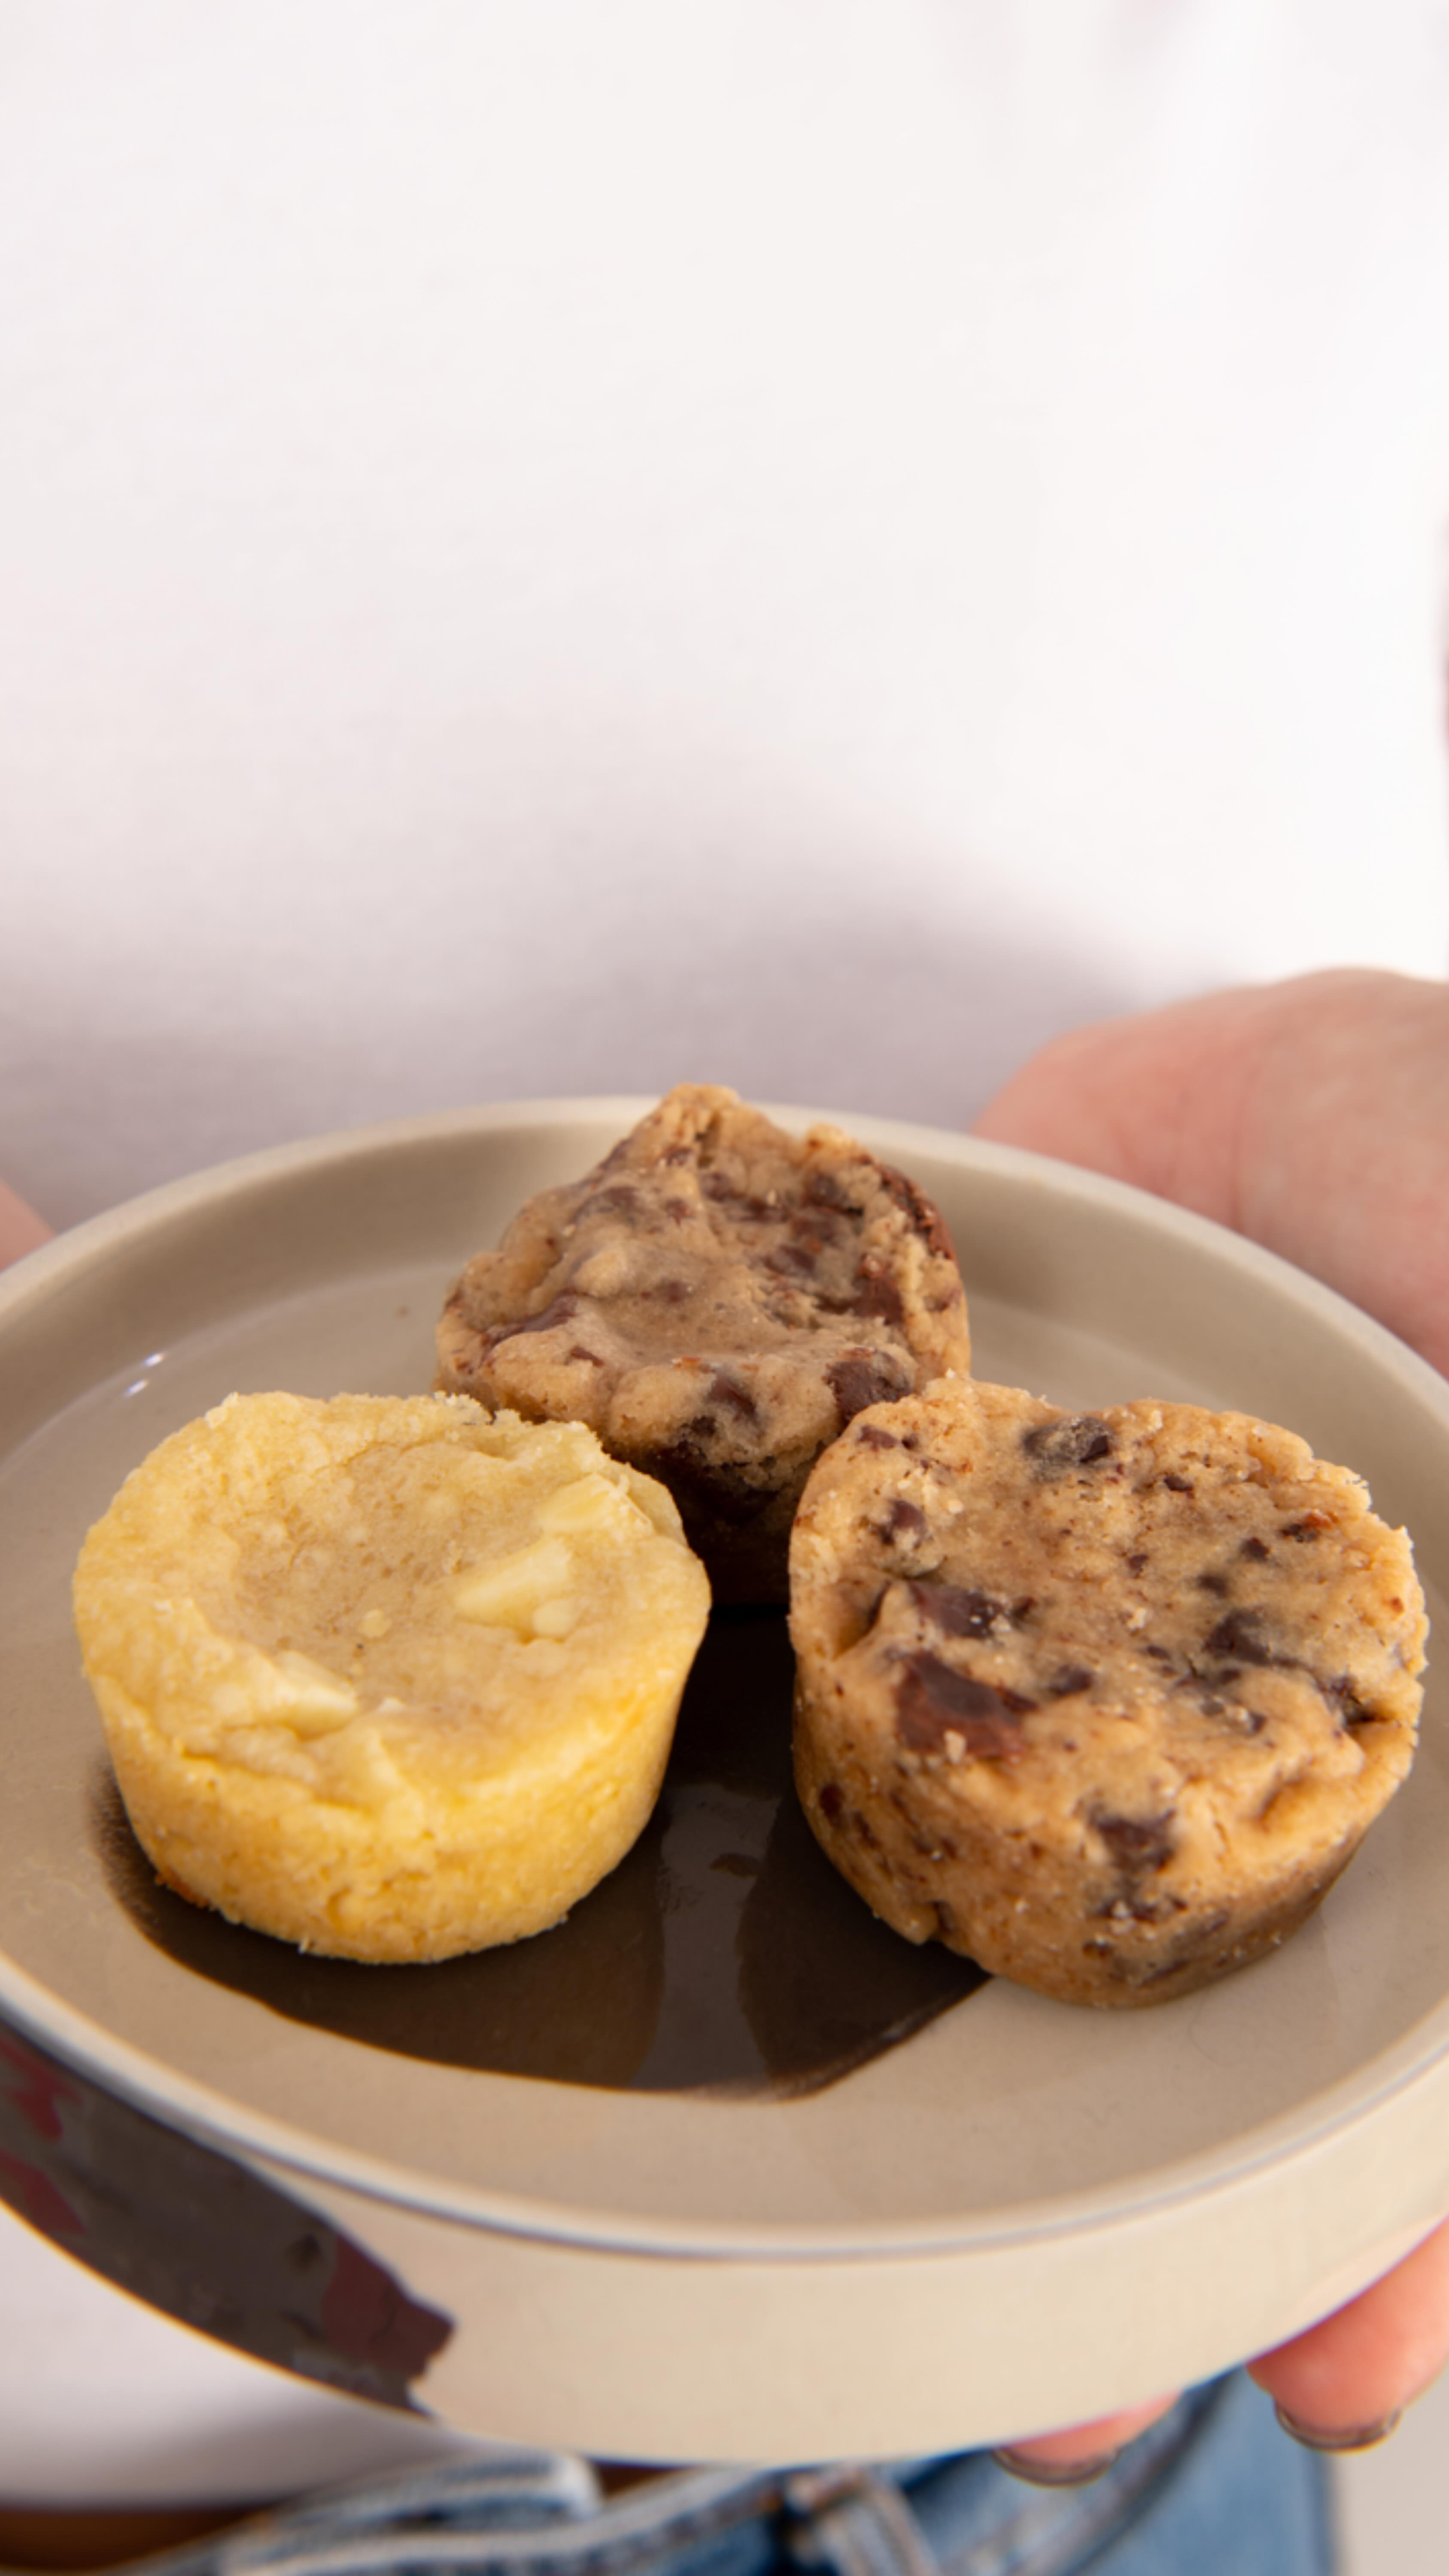 Il y en a pour tous les goûts !! D’ailleurs quel est votre cookie préféré ? 😍

🍪 Faits maison à Gémenos (13)
📍Disponibles dans plusieurs points de vente
💌 Plus d’infos sur notre site web (lien dans notre bio)

#CookiesGiraudon #Bonheur #CookiesAvecAmour  #GourmandiseAuthentique #homemadewithlove #CookiesArtisanaux #FaitAvecAmour #Gémenos  #CuisineArtisanale #marseille #madeinfrance